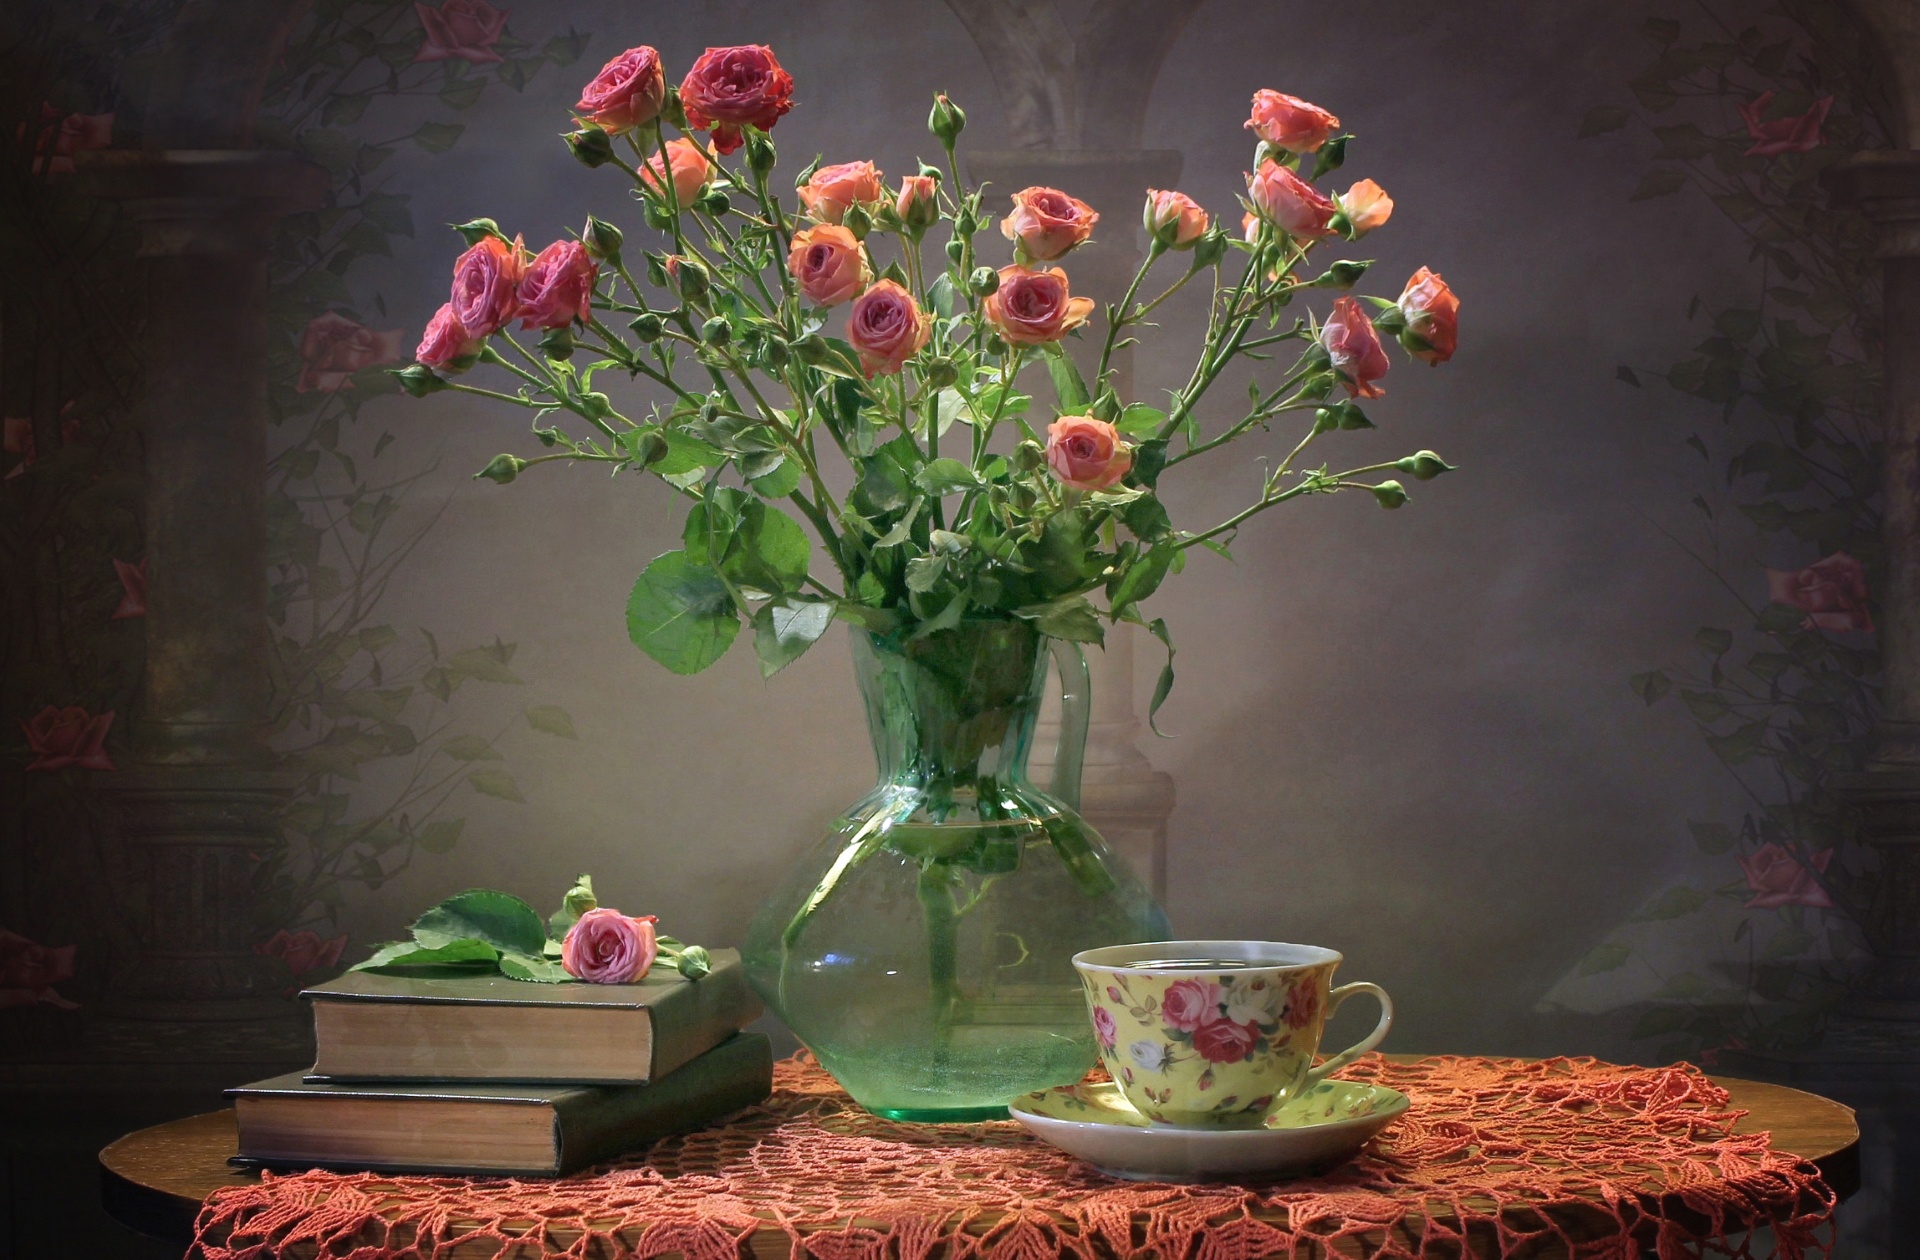 photography, still life, flower, pink rose, rose, saucer, teacup, vase lock screen backgrounds